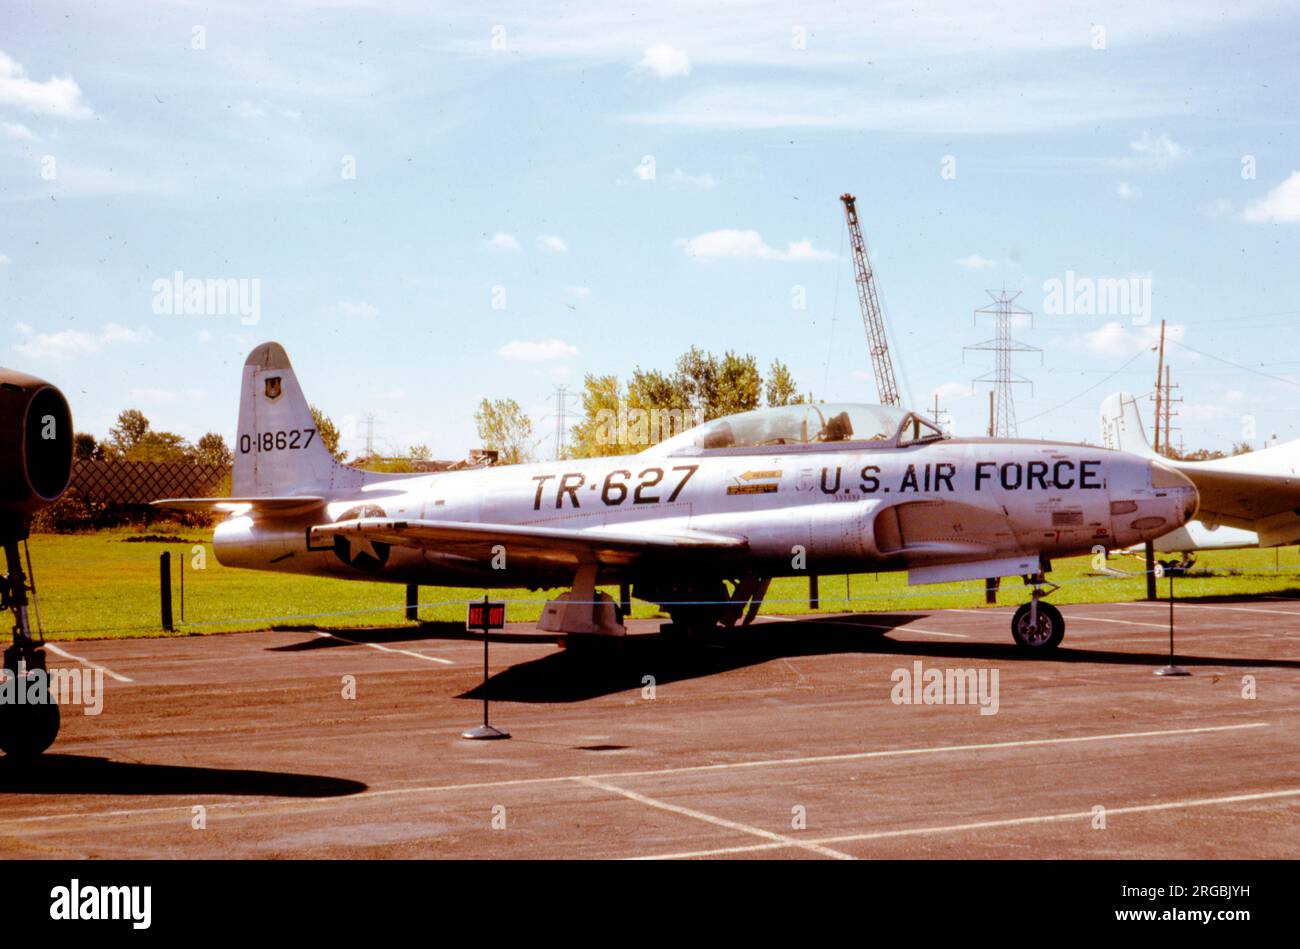 Lockheed T-33A-1-lo o-18627 (msn 580-6411, 51-8627, numero di buzz 'TR-627'), in mostra al Museo EAA AirVenture di Oshkosh, Wisconsin. Foto Stock